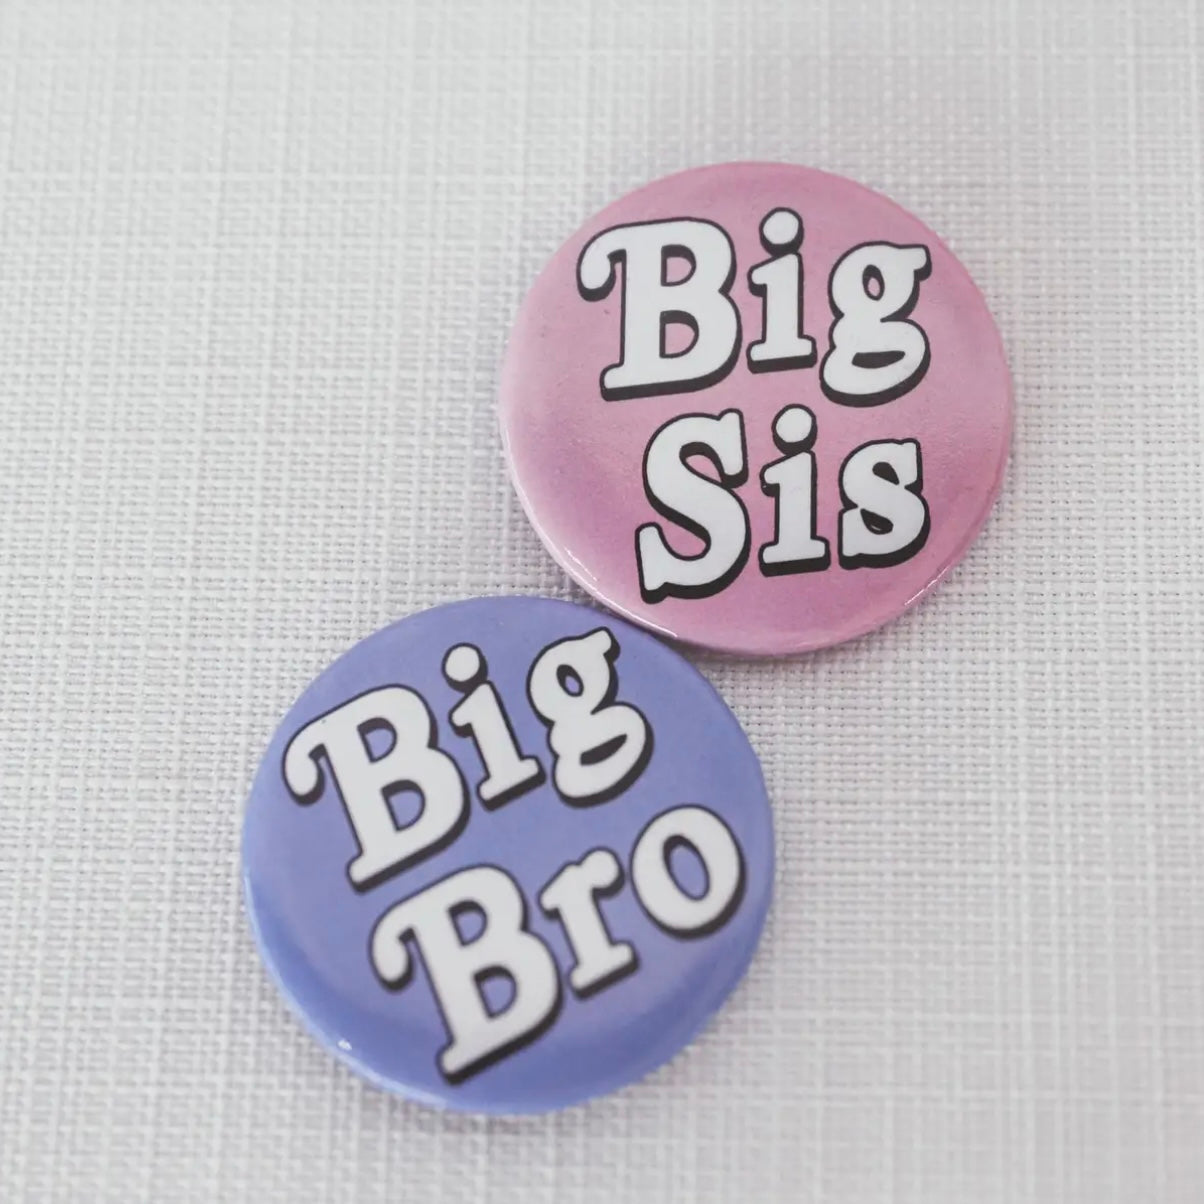 Big Bro + Big Sis Buttons